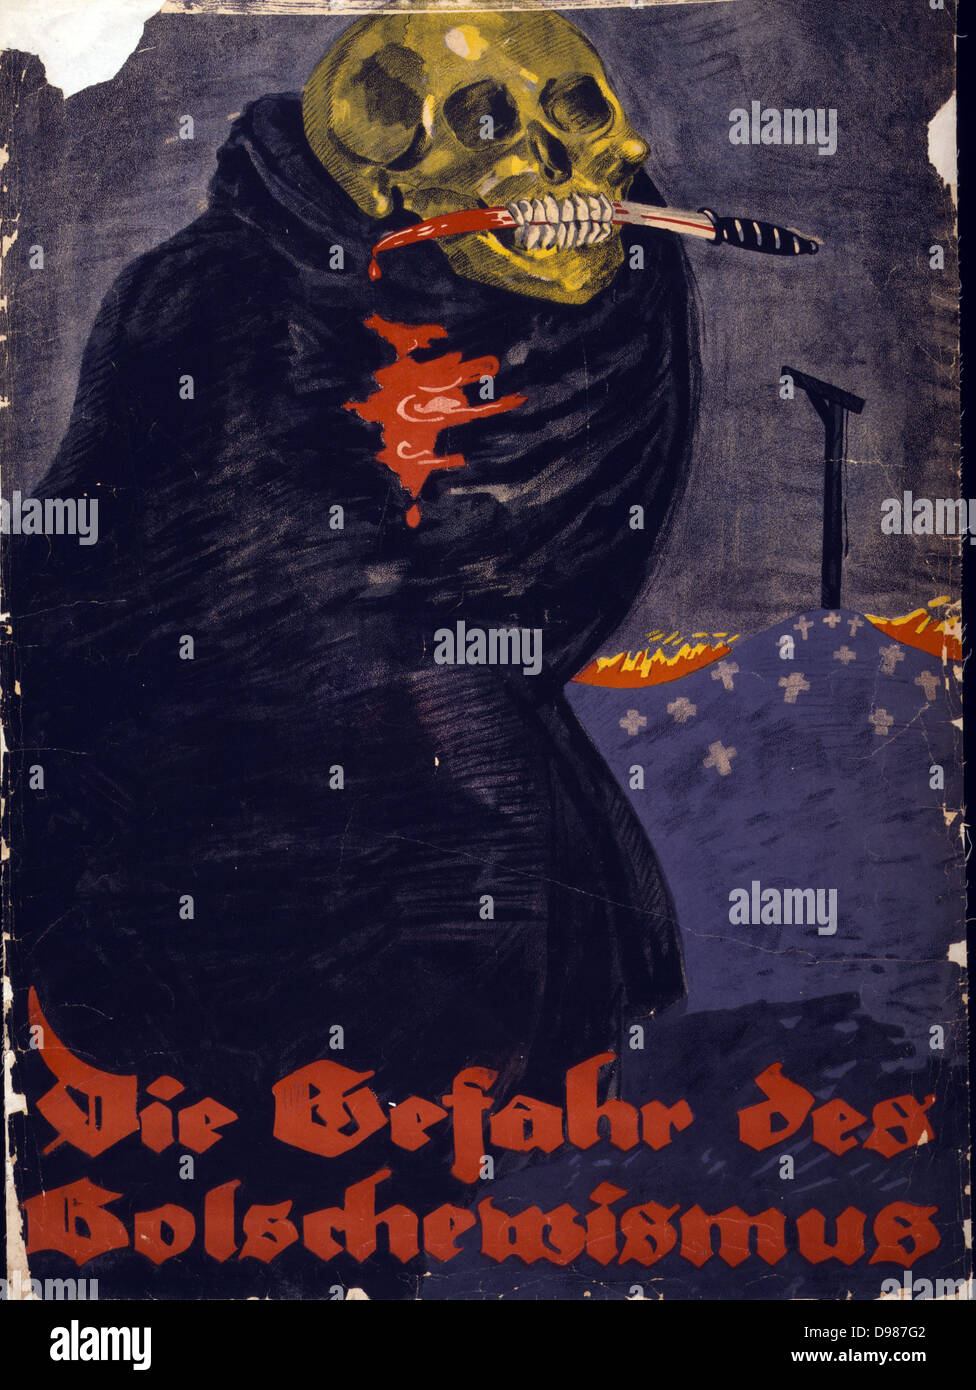 Die Gefahr des Bolschewismus" : la première guerre mondiale affiche allemande, montre un squelette, enveloppé dans un manteau noir, avec un couteau sanglant qui a eu lieu dans ses dents. Dans l'arrière-plan une colline des croix au sommet de laquelle est une potence. Texte : "Le danger du bolchevisme". Banque D'Images